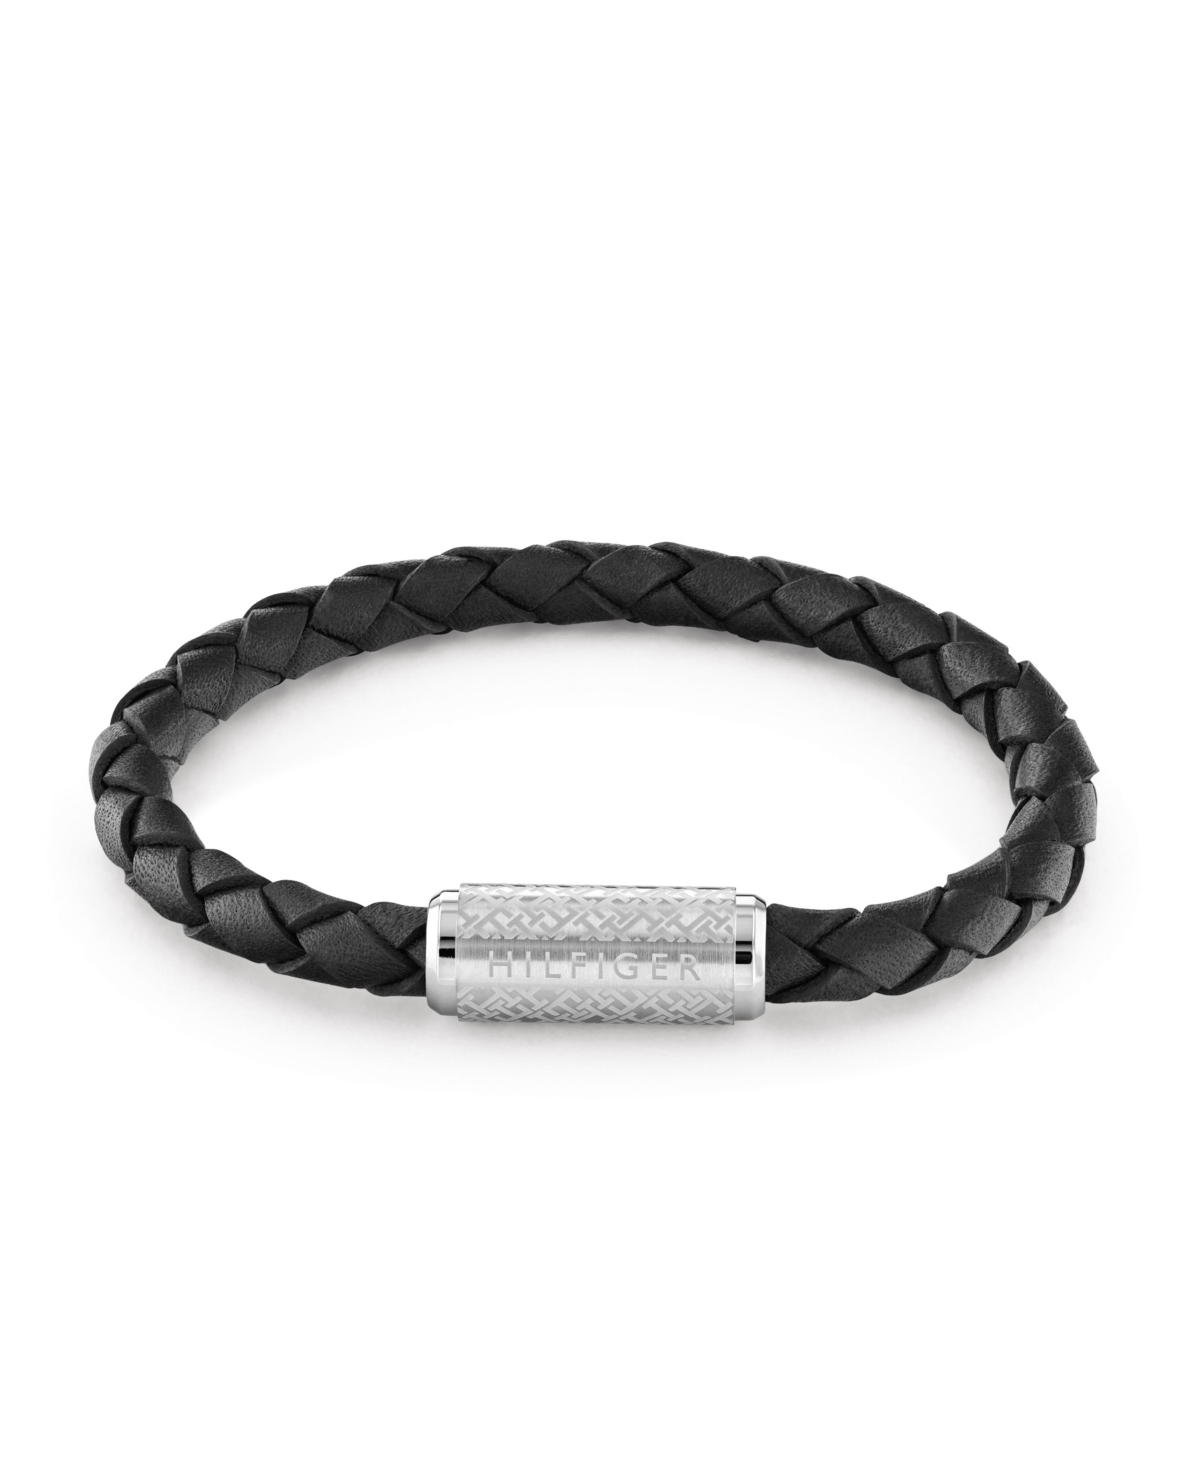 Tommy Hilfiger Adjustable Braided Black Leather Bracelet